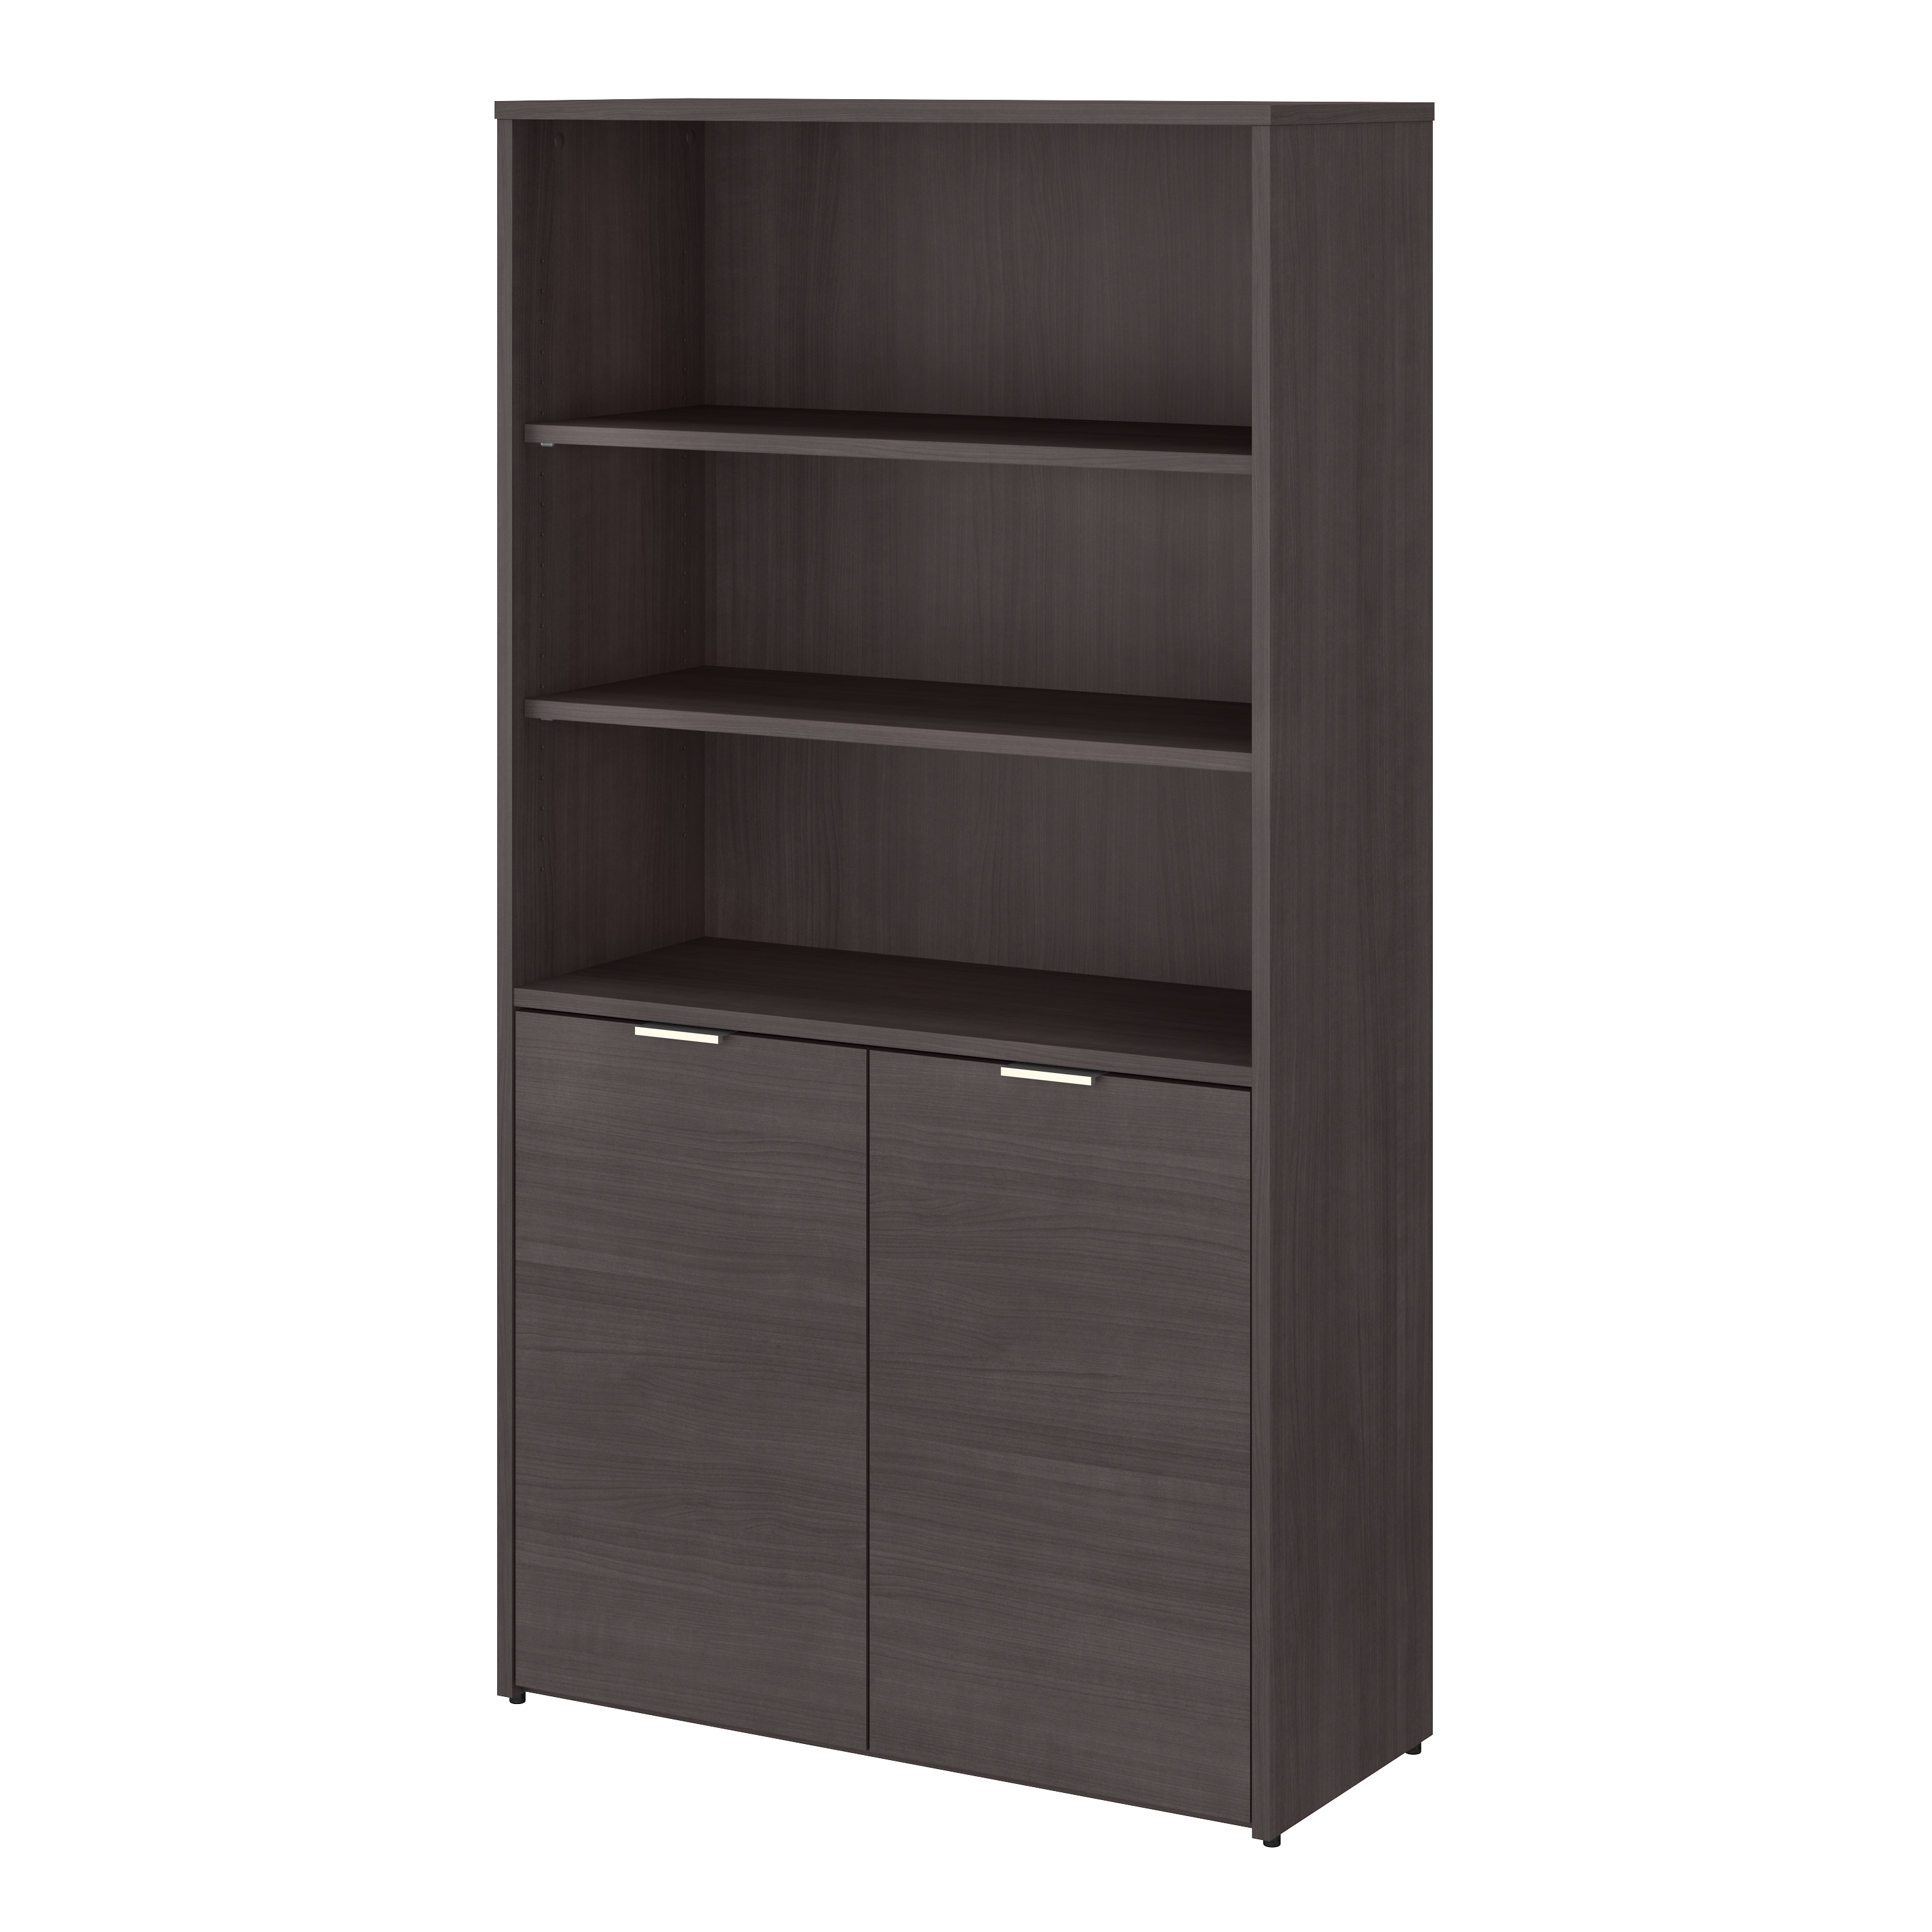 Shop Bush Business Furniture Jamestown 5 Shelf Bookcase with Doors 02 JTB136SG #color_storm gray